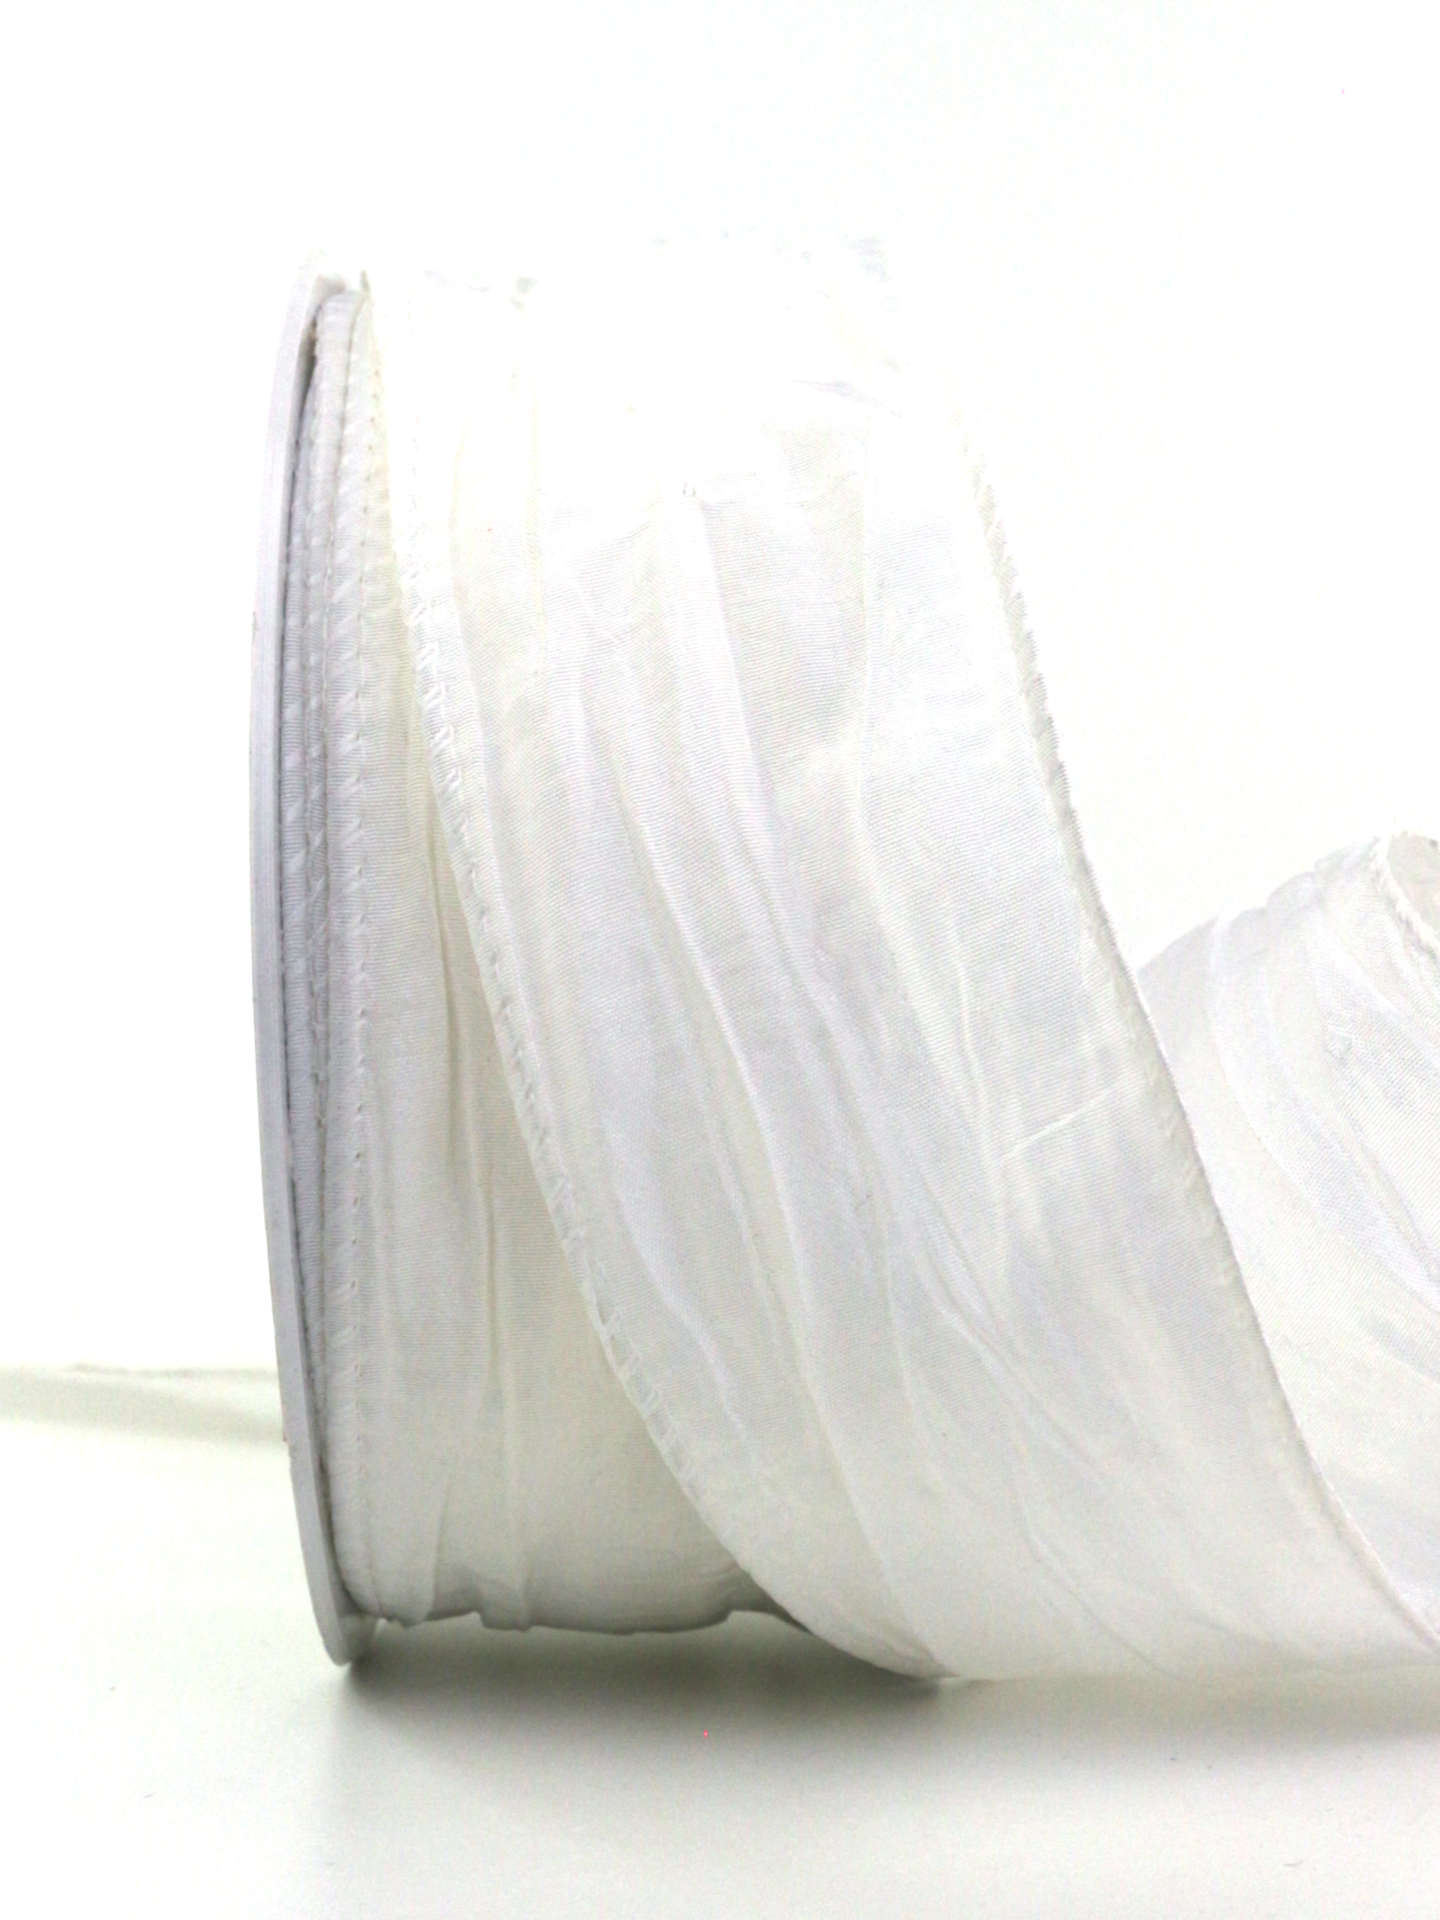 Crash-Stoffband, weiß, 50 mm breit, 10 m Rolle - geschenkband, geschenkband-einfarbig, dekoband